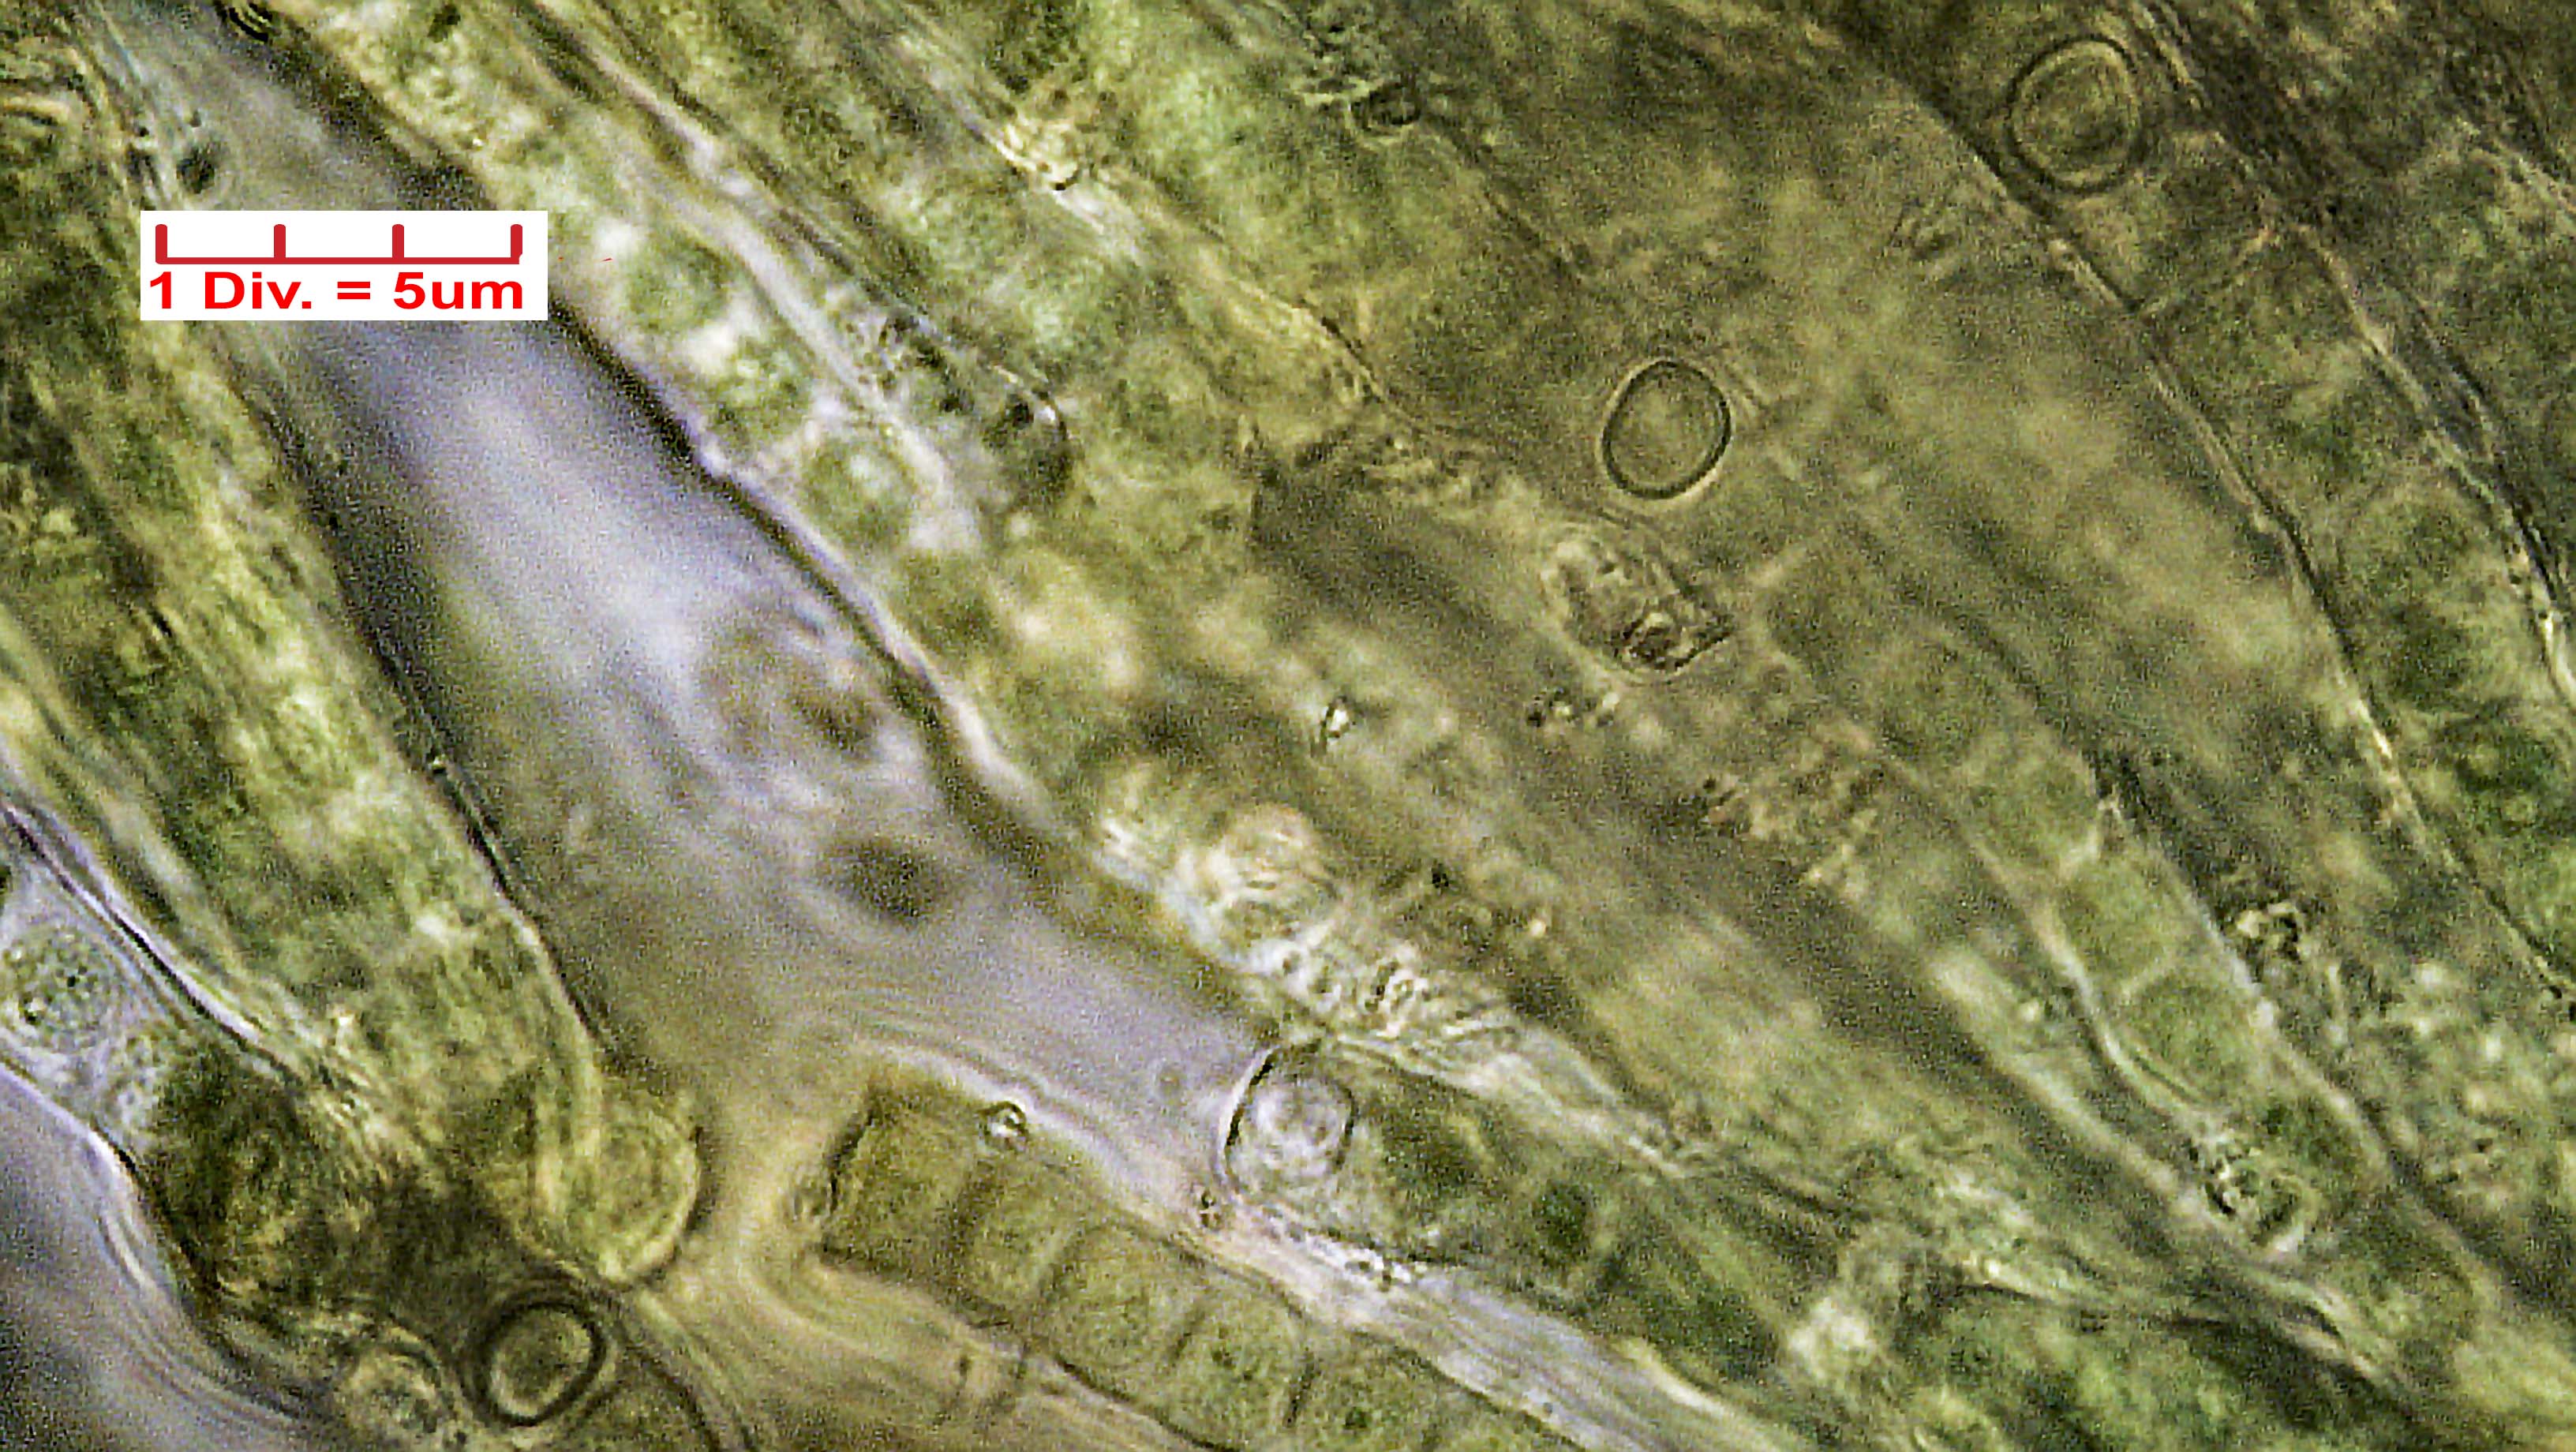 ././Cyanobacteria/Nostocales/Capsosiraceae/Capsosira/brebissonii/capsosira-brebissonii-516.jpg